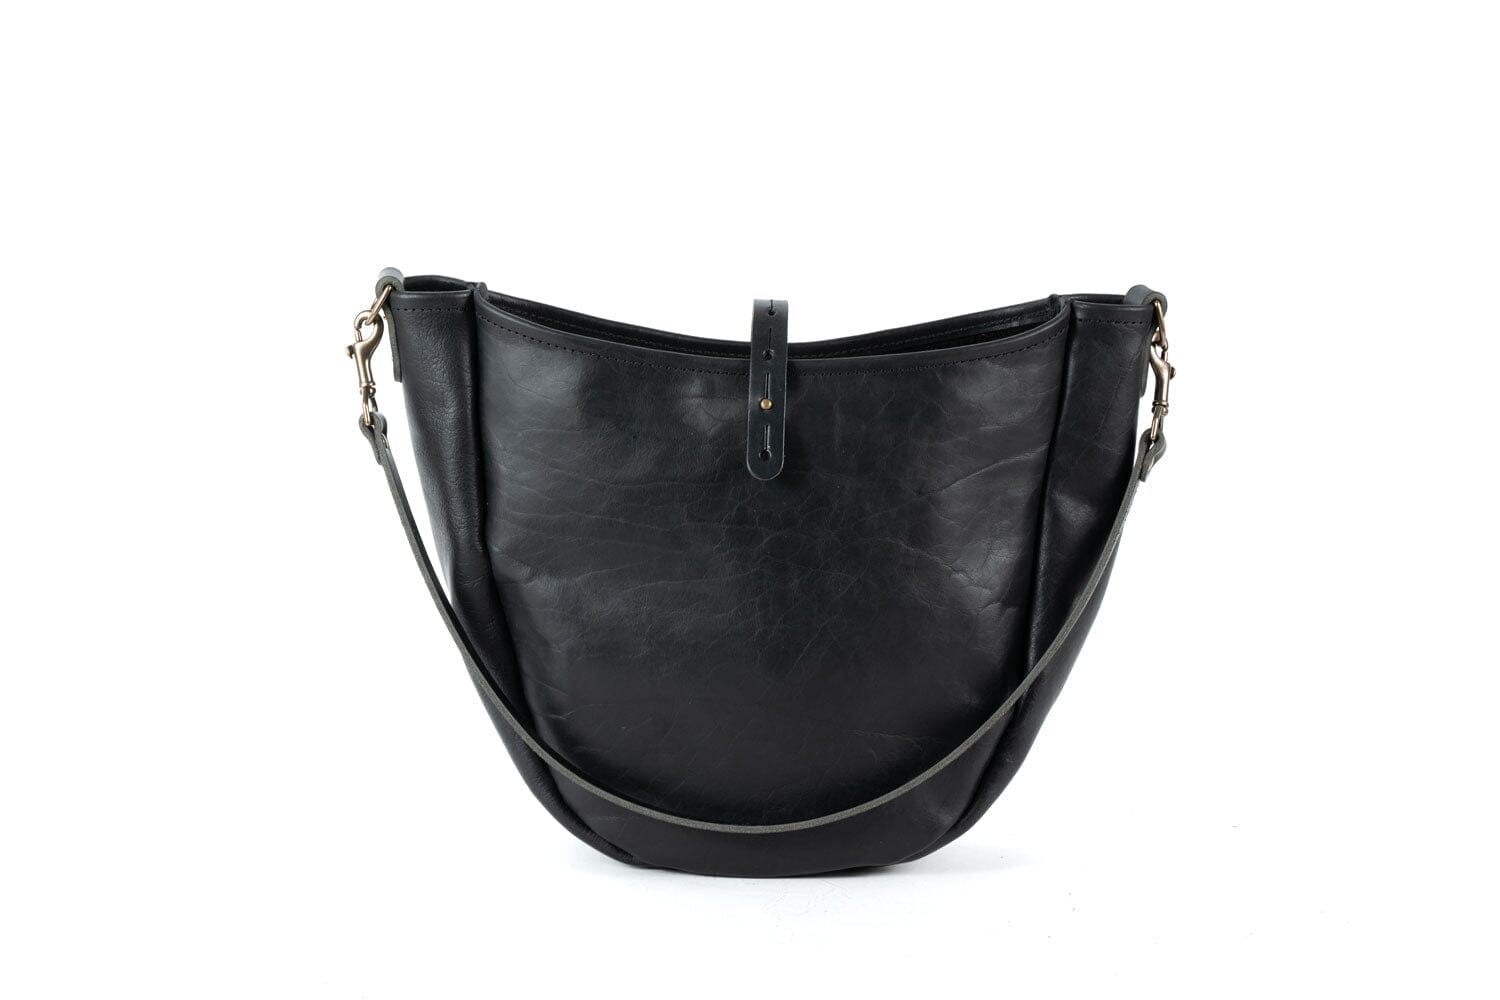 Celeste Leather Hobo Bag - Medium - Black Bison